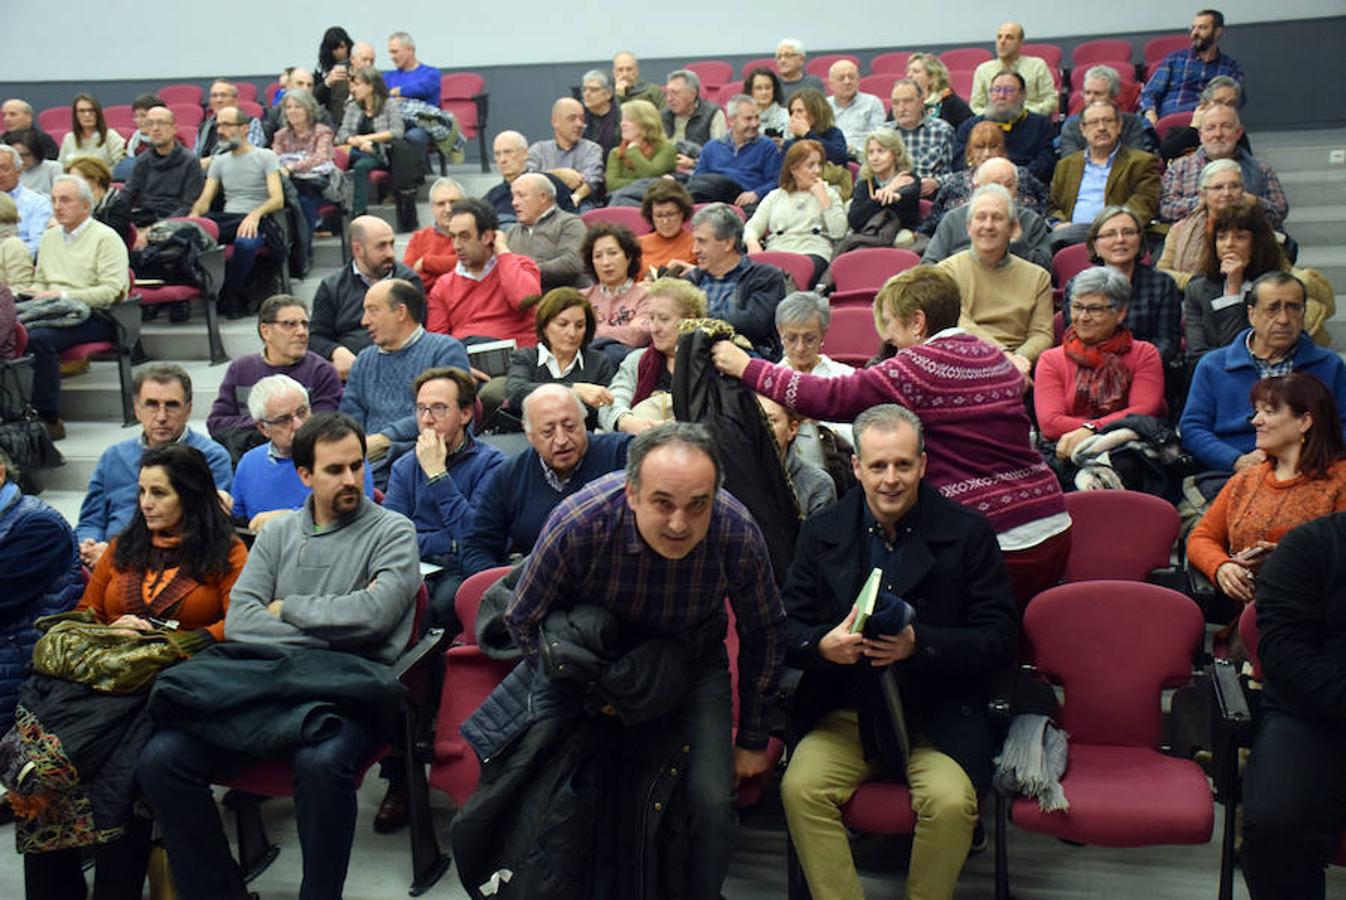 El profesor de la UR Emilio Barco prsentó el pasado jueves en Logroño su nuevo libro titulado 'Donde viven los caracoles' rodeado de buenos amigos.